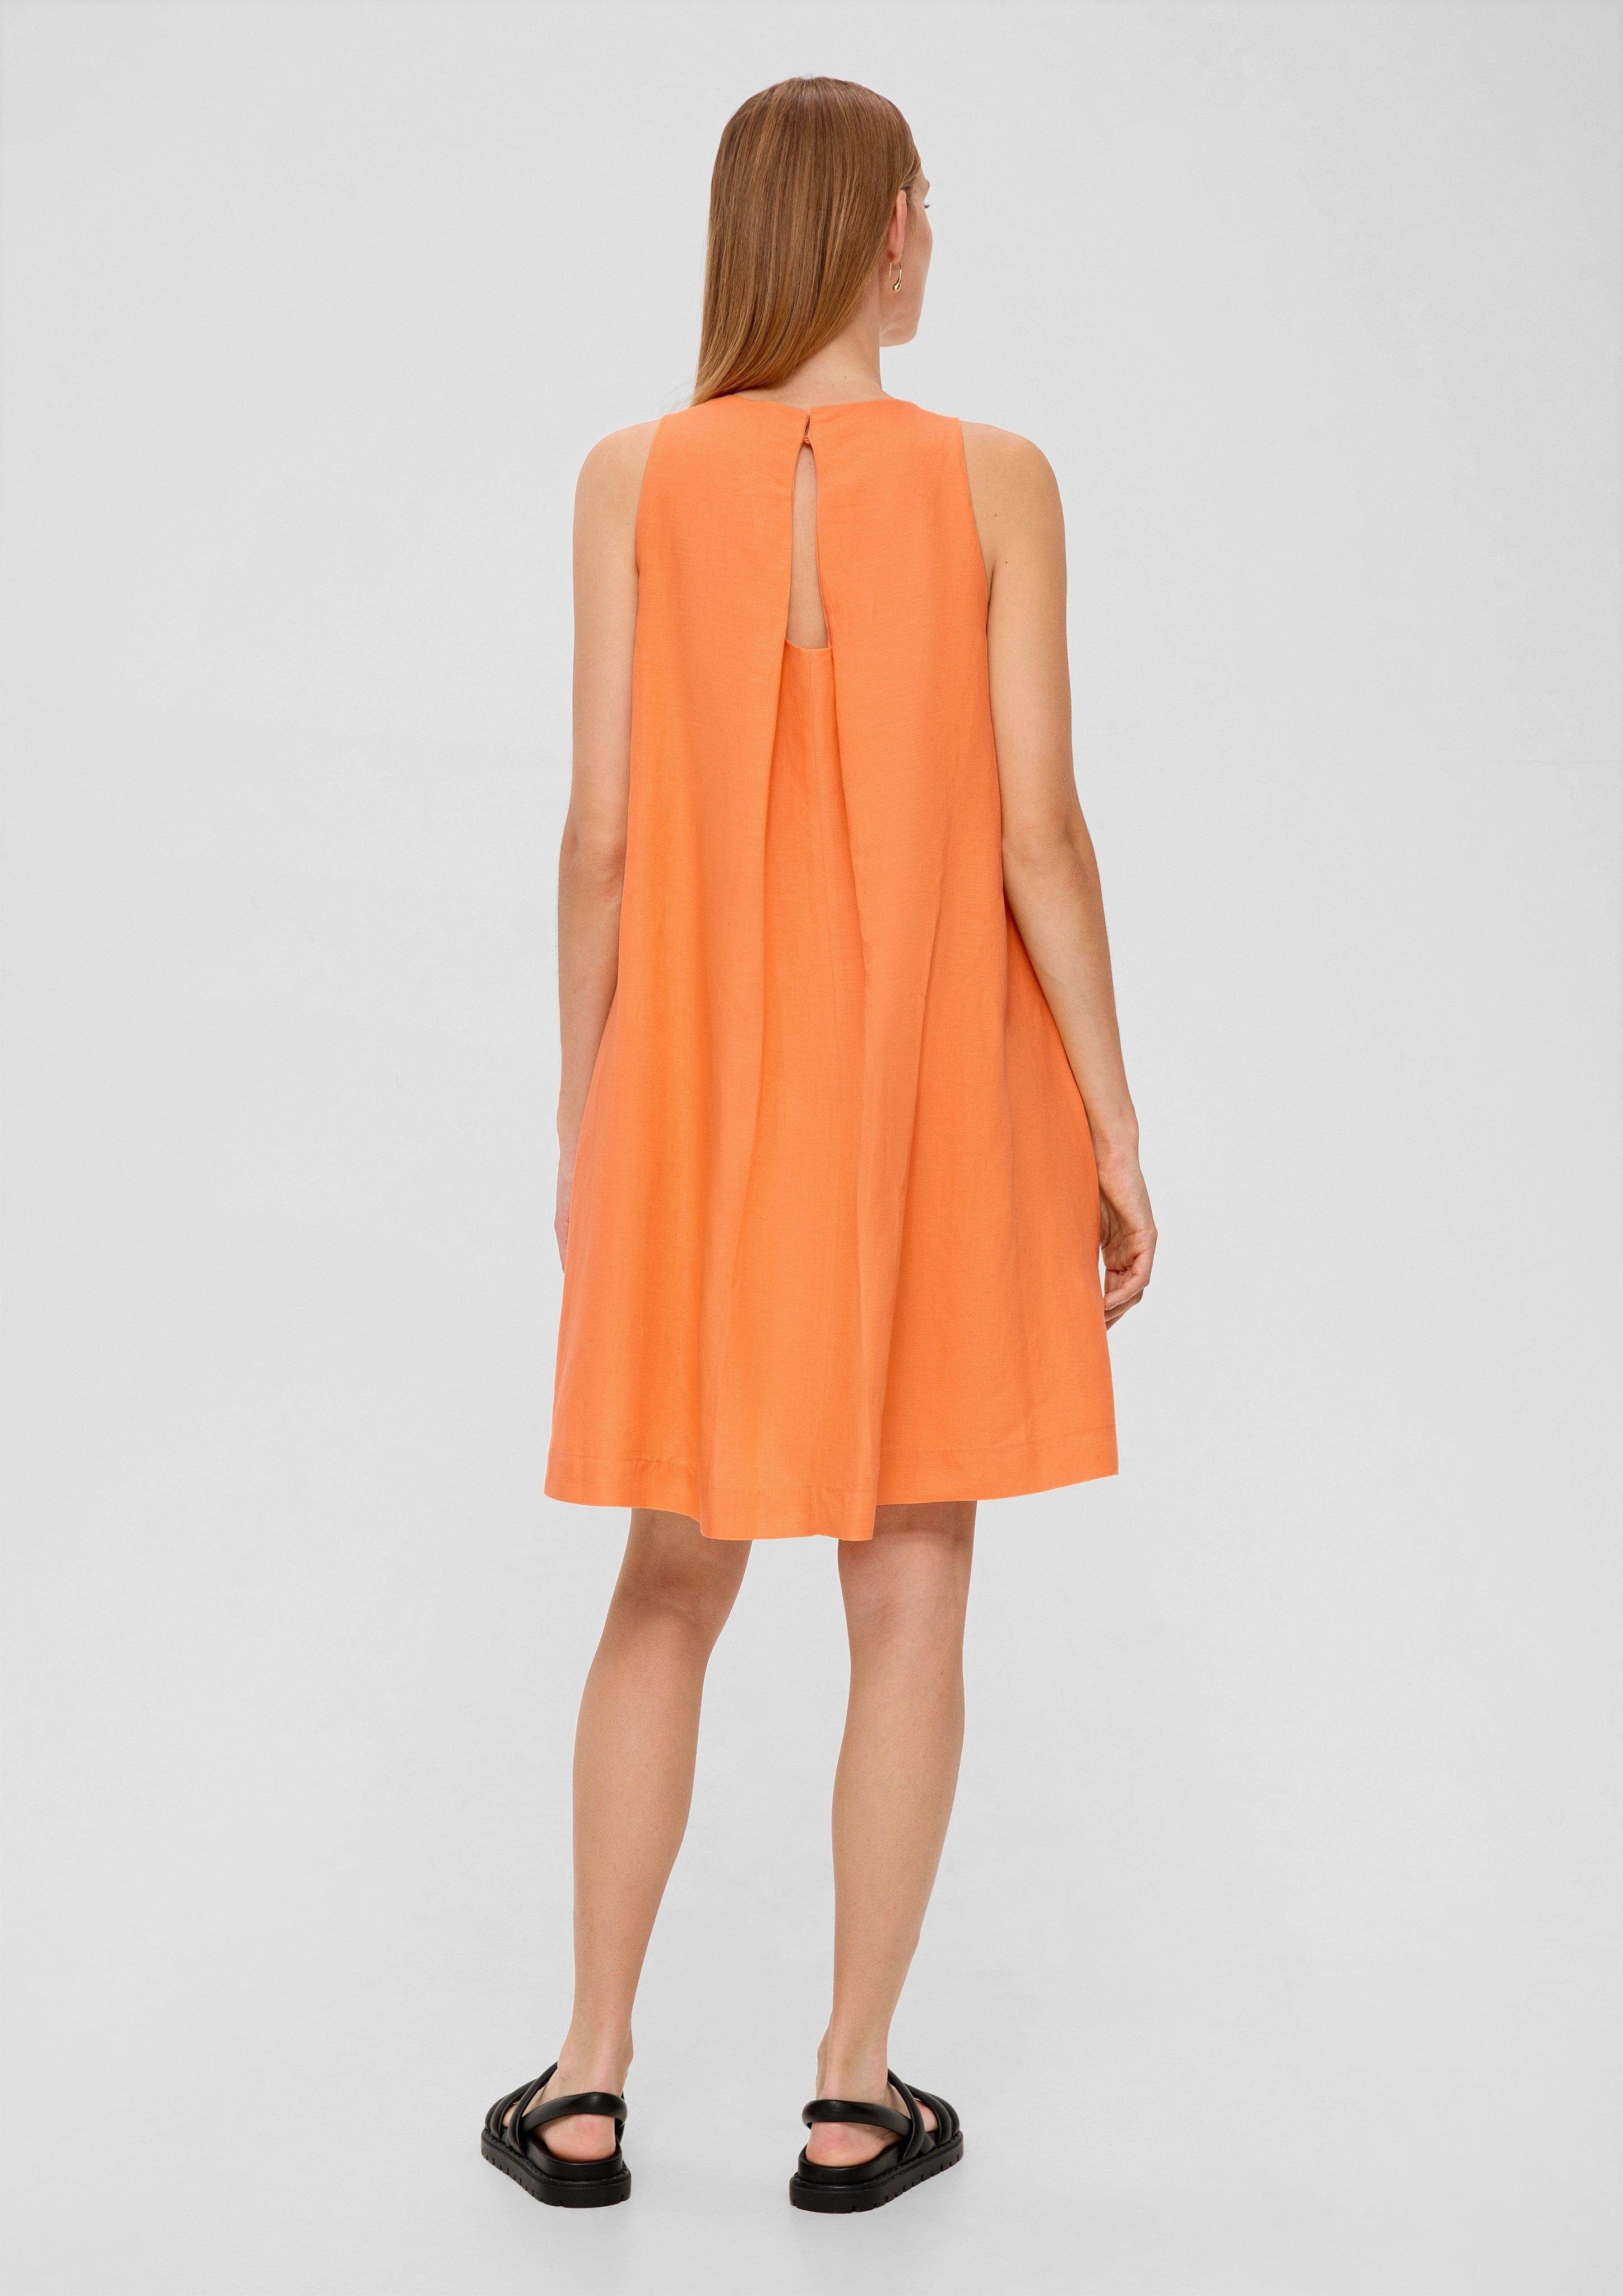 LABEL aus s.Oliver Leinen Viskose orange BLACK Kleid Minikleid und